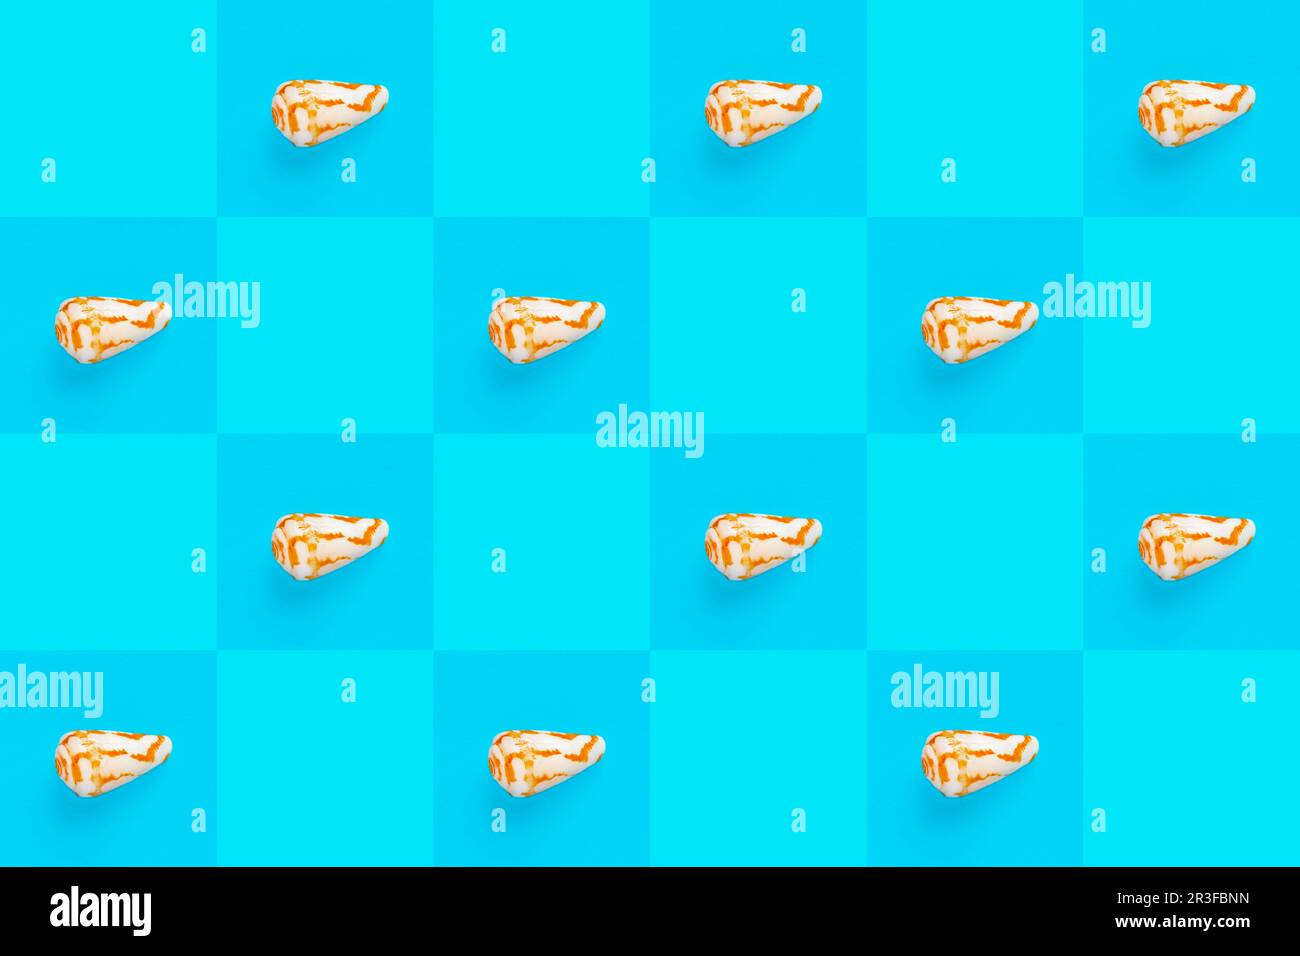 Imagen de fondo de fondo de fondo de pantalla plana de conchas marinas costeras sobre un fondo azul a cuadros Foto de stock